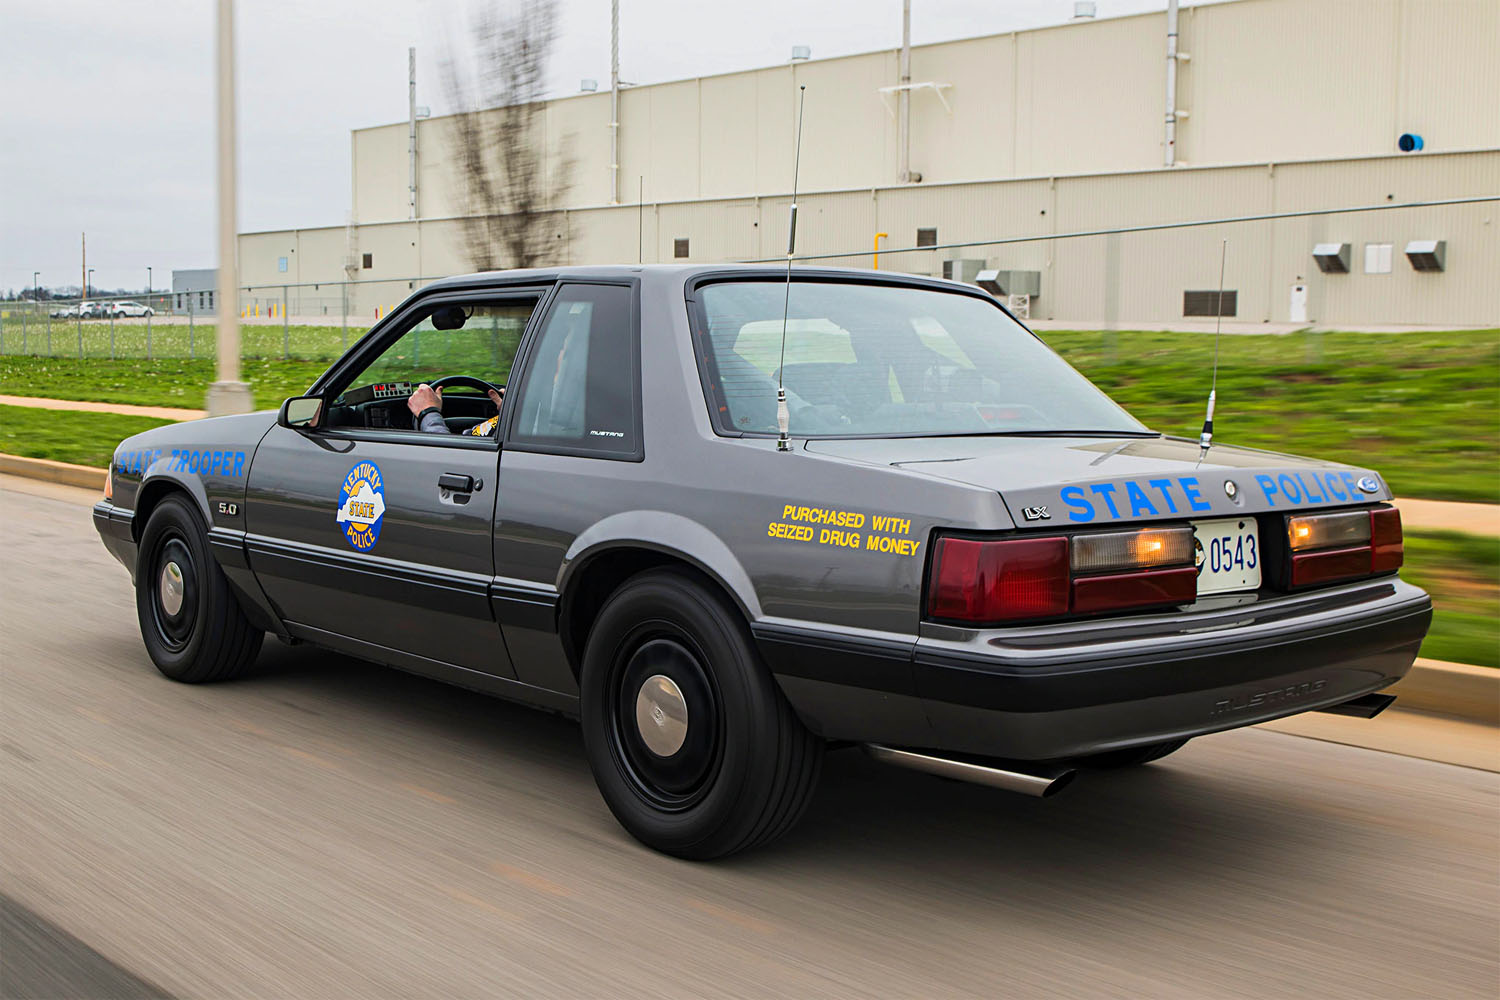 Ford Scorpio 1990 Police